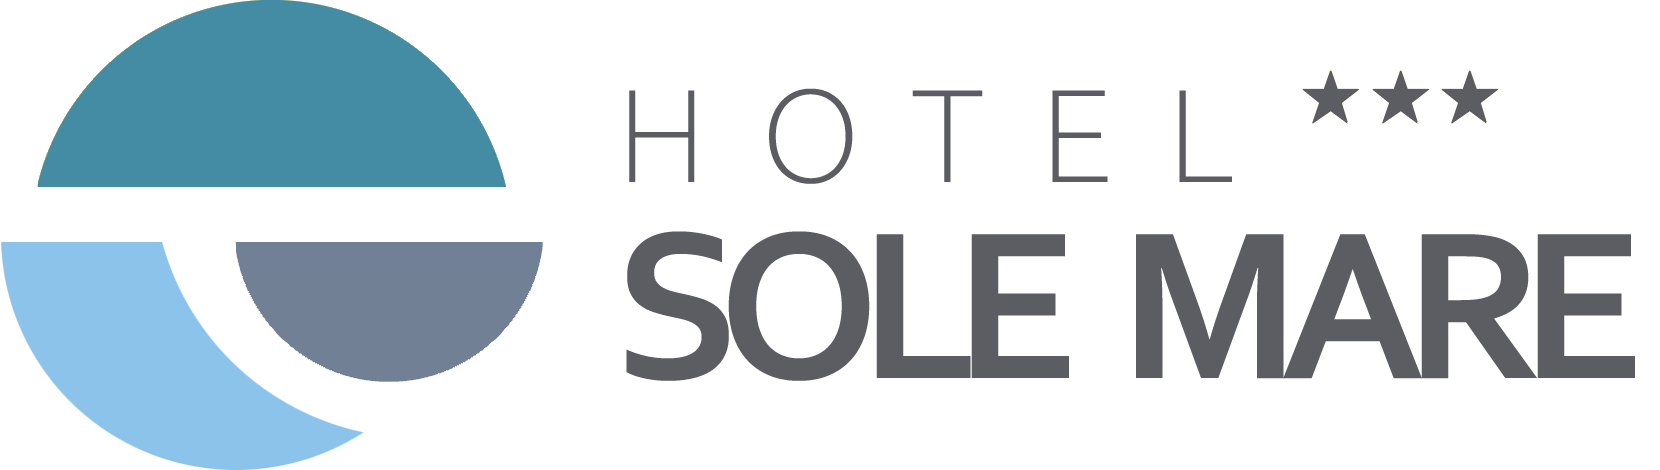 Hotel Sole Mare